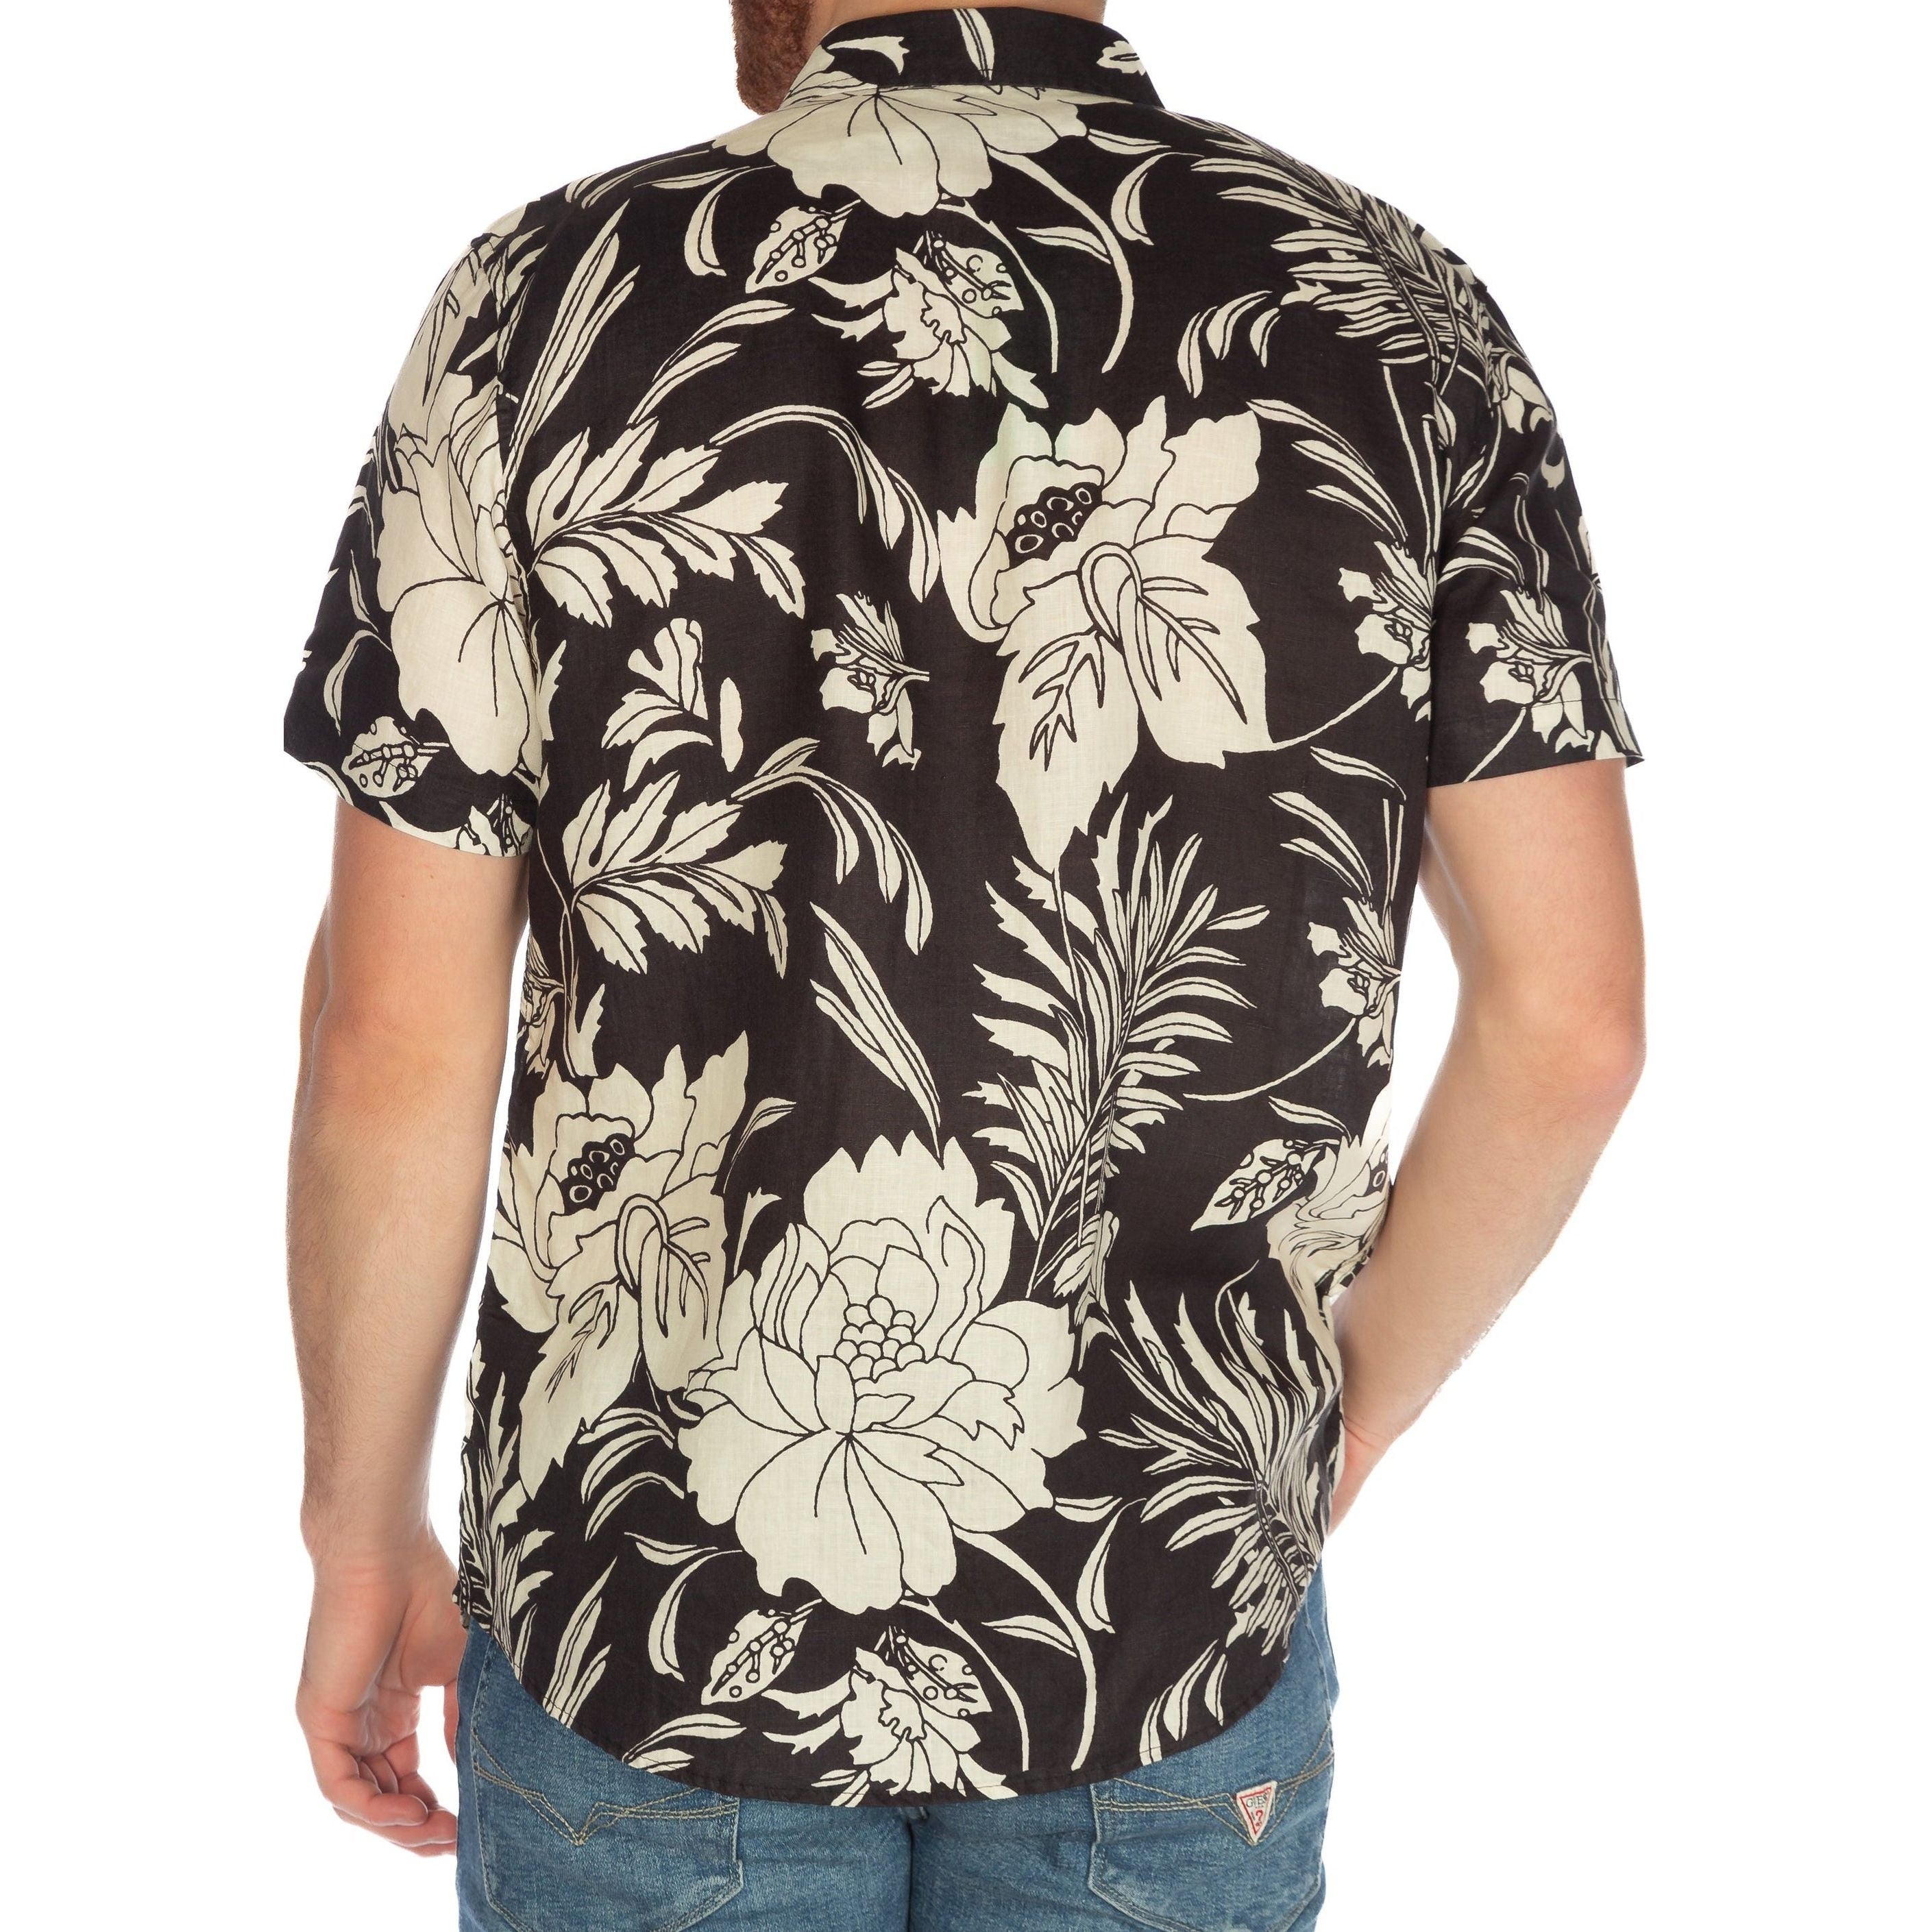 Guess - Island Linen Shirt in Cypress Palm